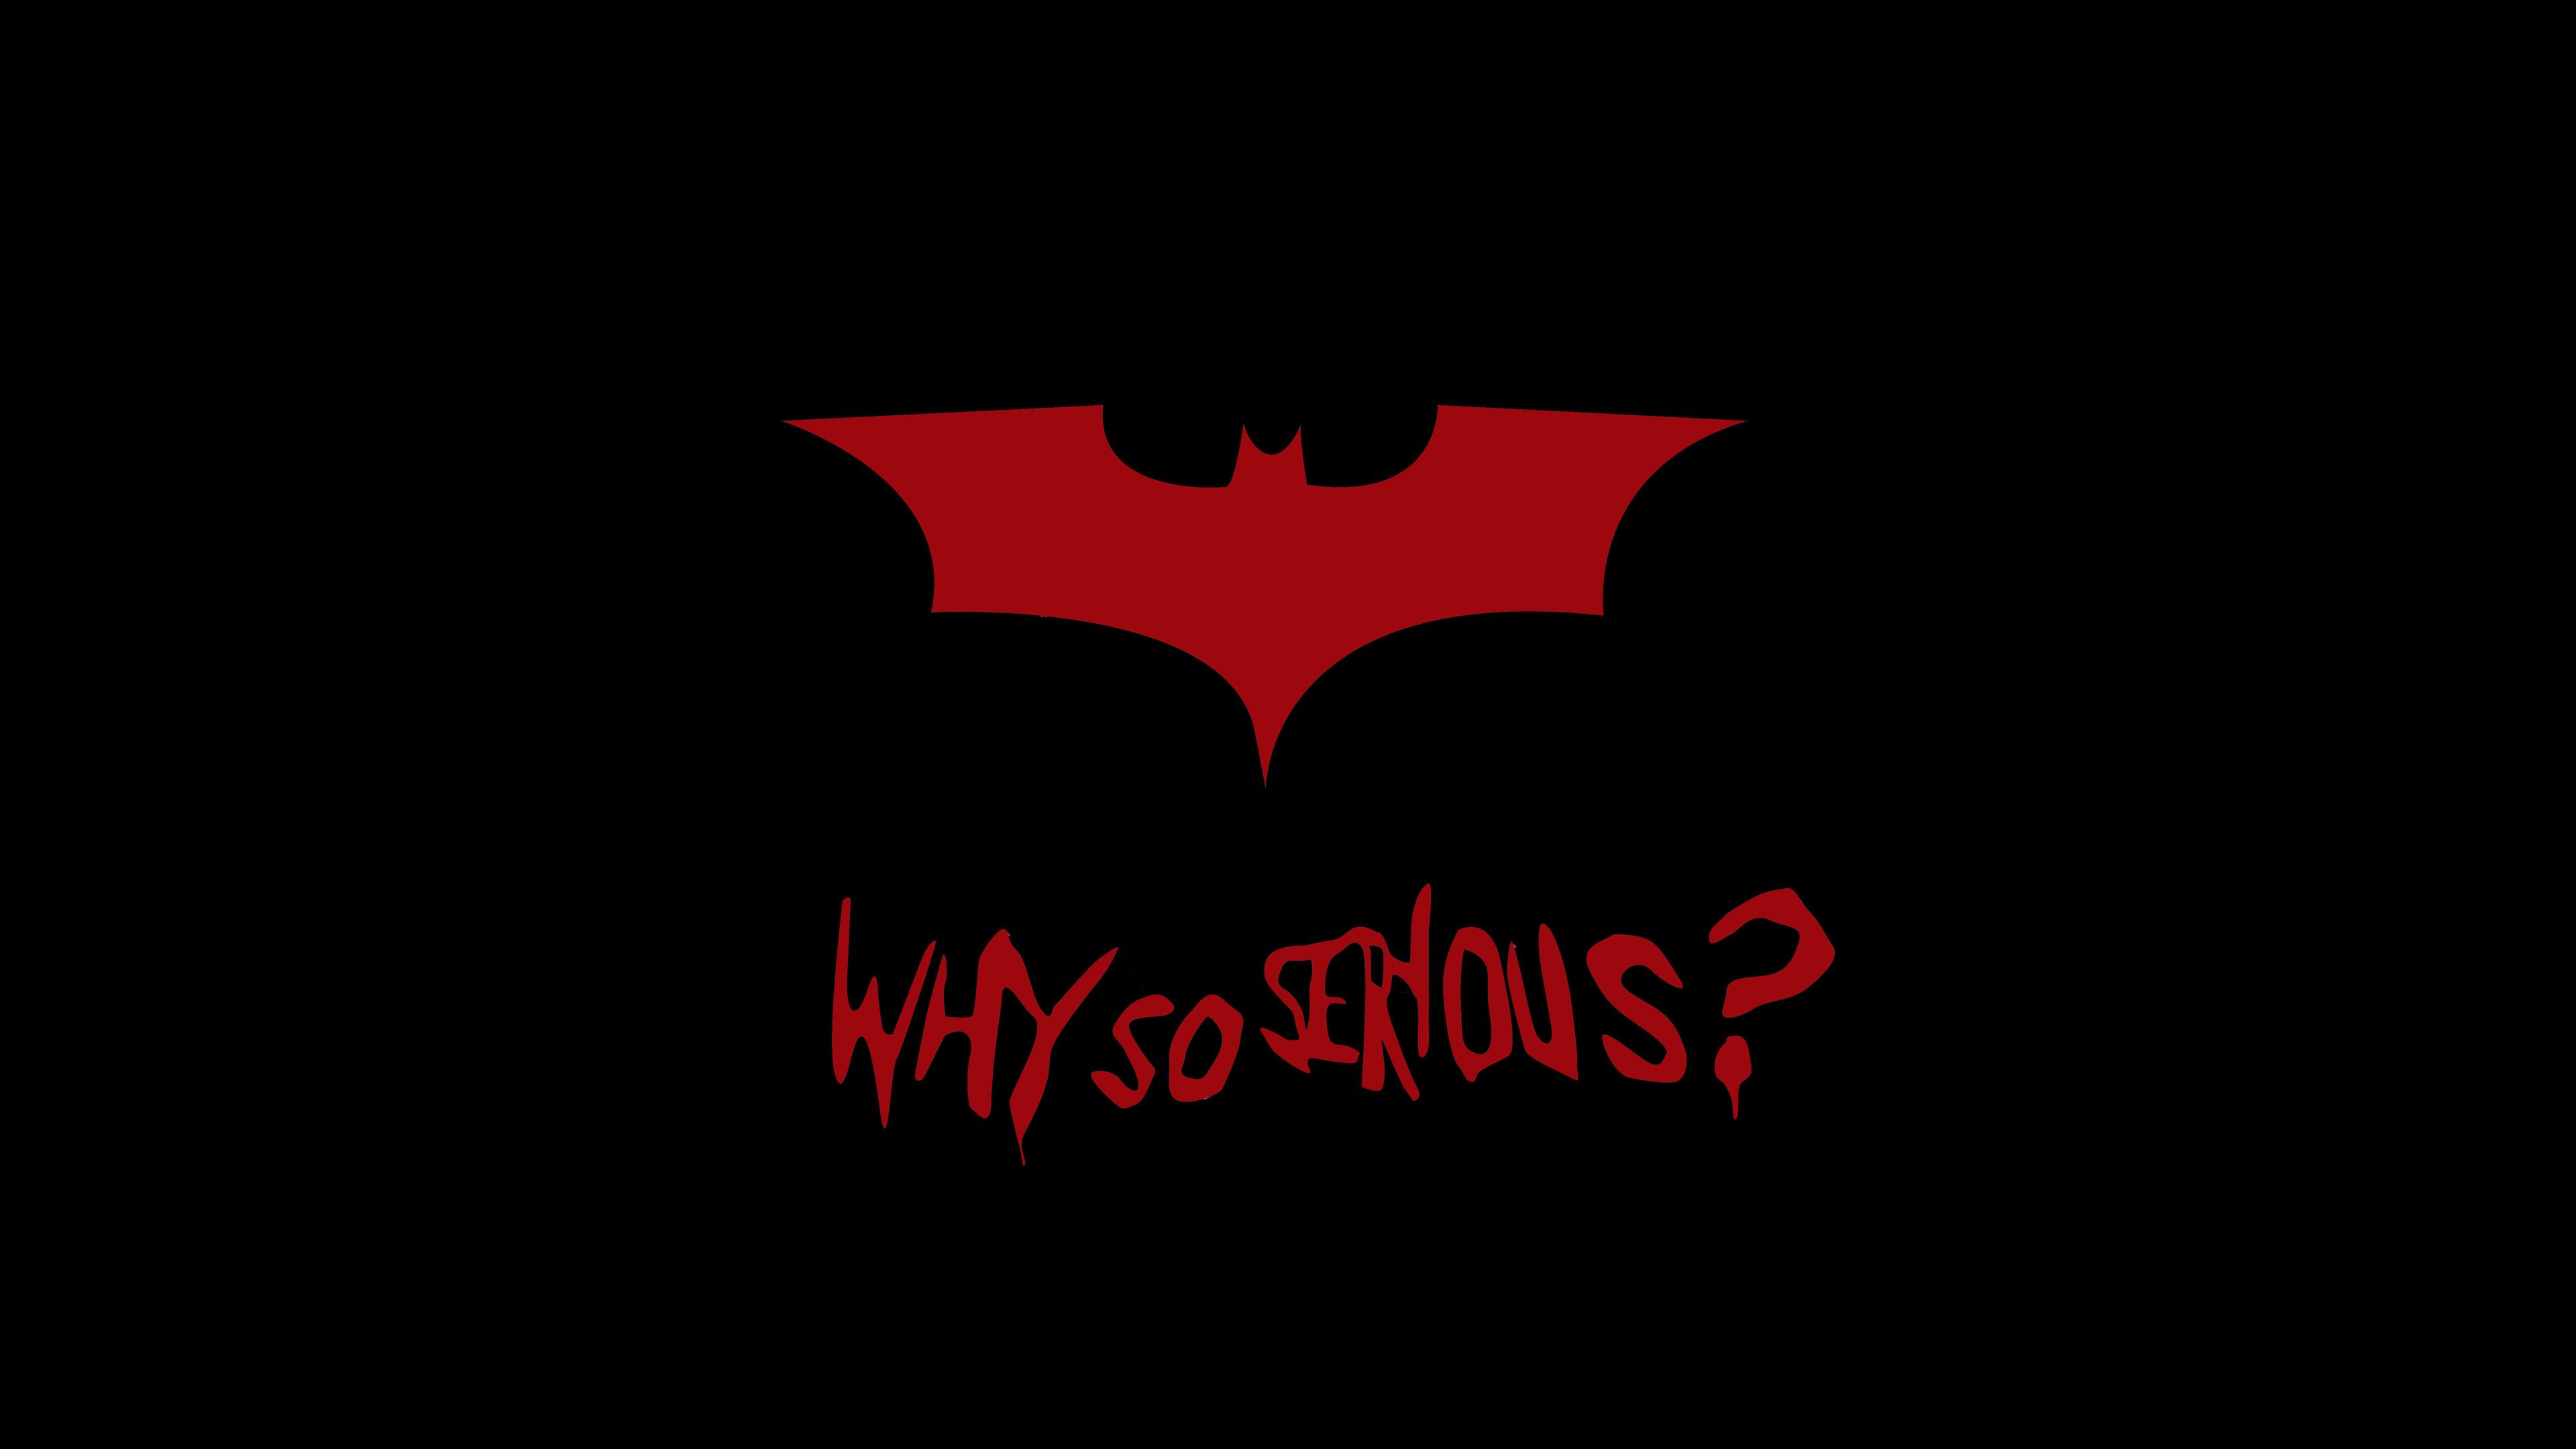 Batman Logo 8k Logo Wallpaper, Hd Wallpaper, Batman Wallpaper, 8k Wallpaper, 5k Wallpaper, 4k Wallpap. Joker HD Wallpaper, Batman Wallpaper, Joker Wallpaper